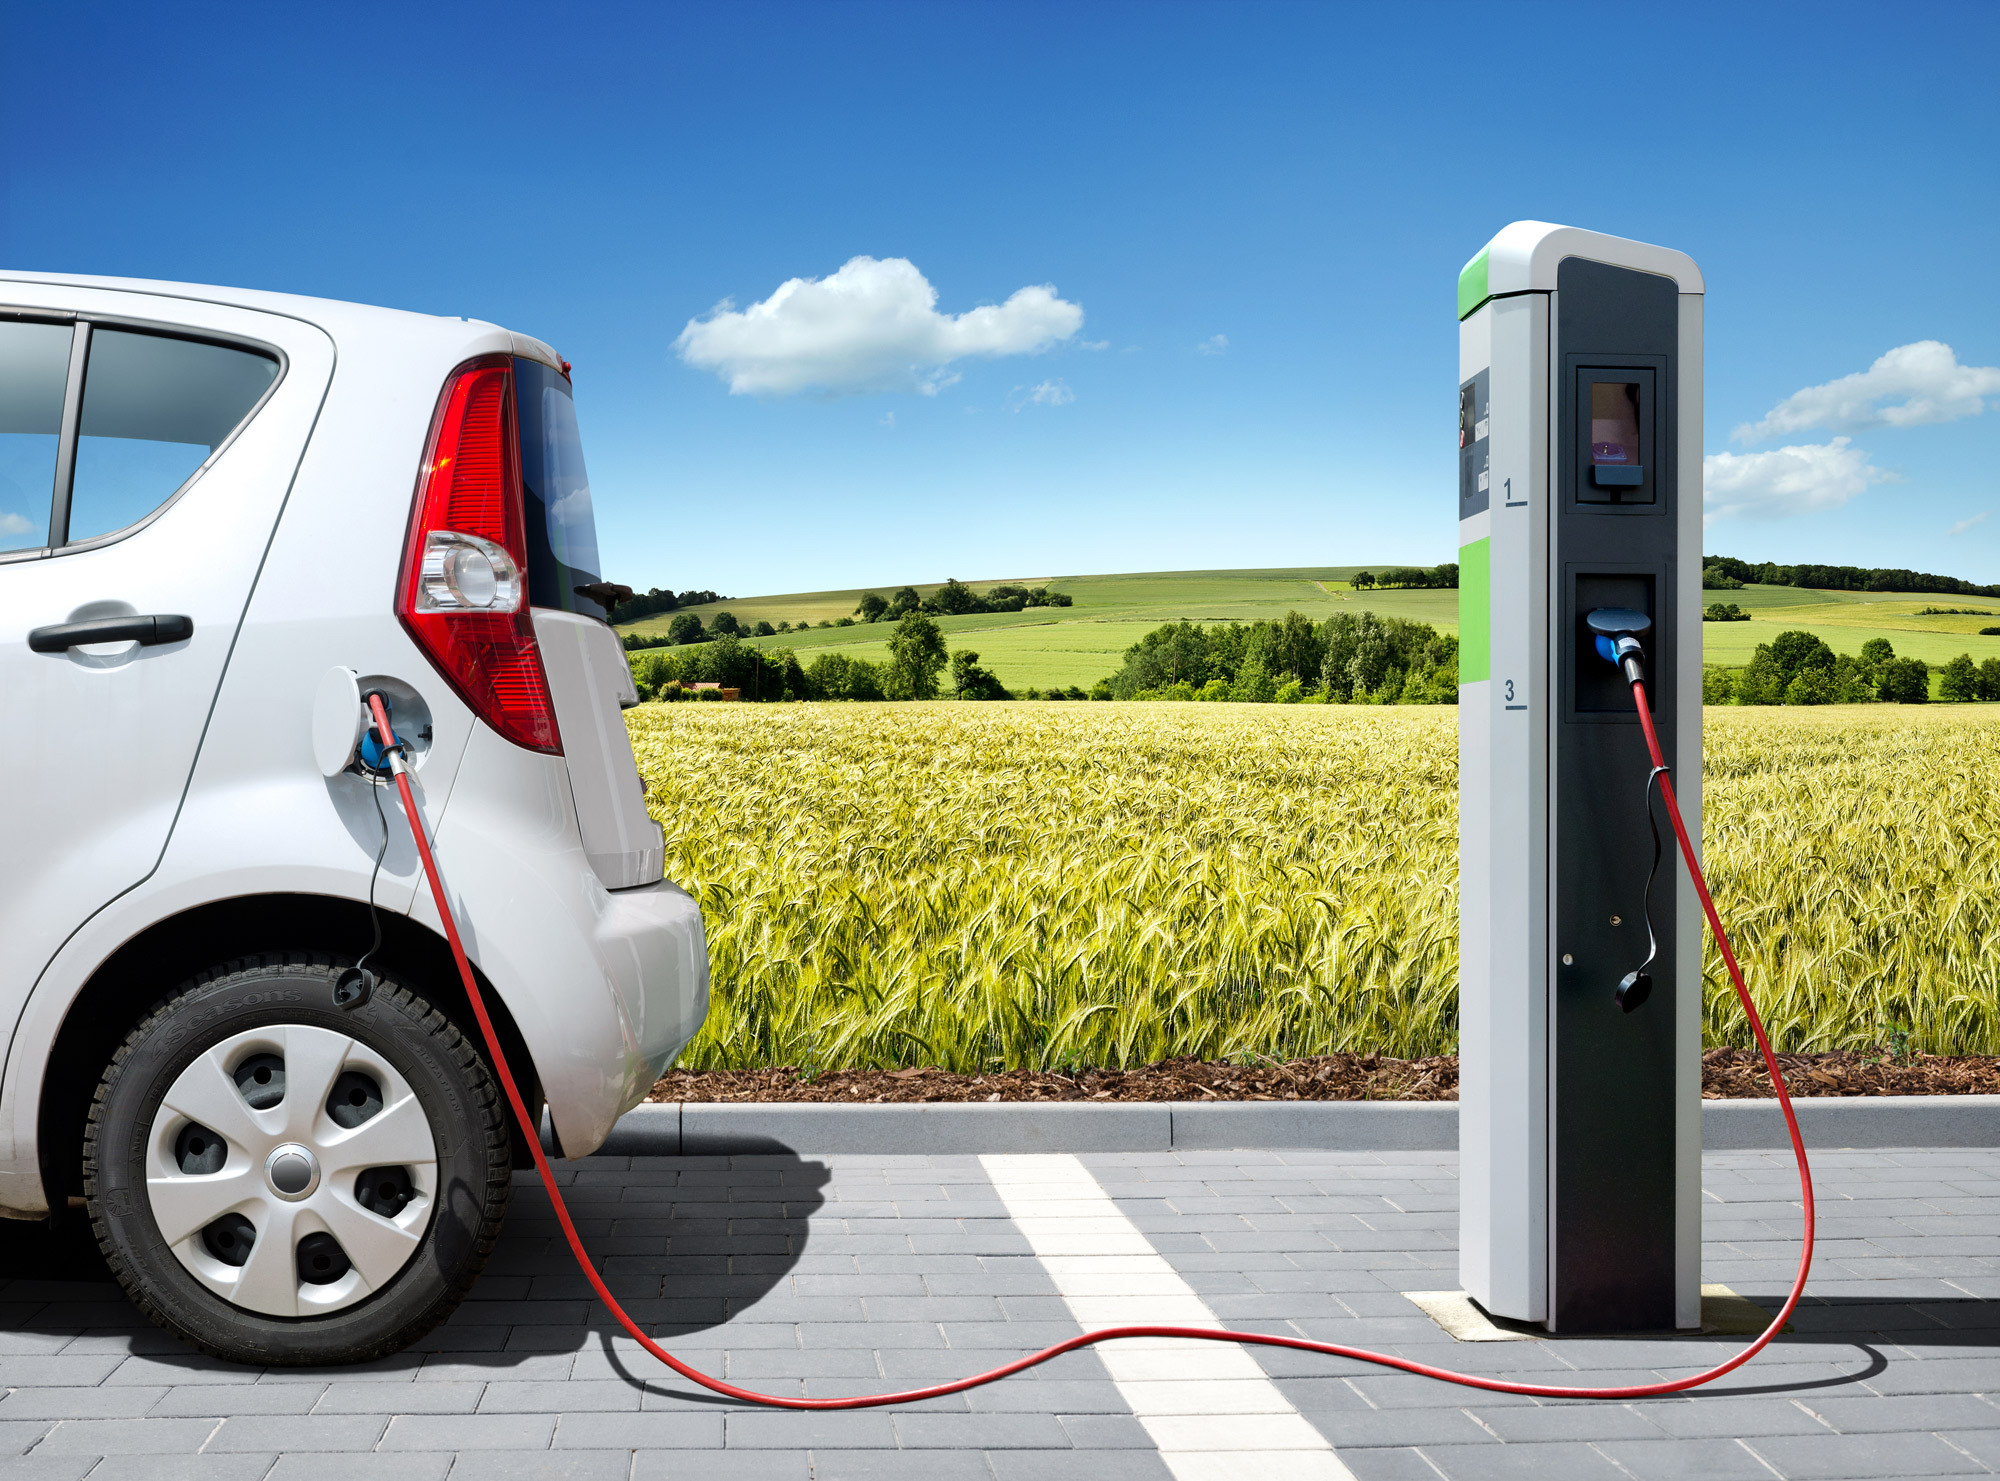 Chiar şi gigantul petrolier Exxon Mobil crede că vehiculele electrice reprezintă viitorul: până în 2040, fiecare maşină nouă vândută în lume va fi electrică